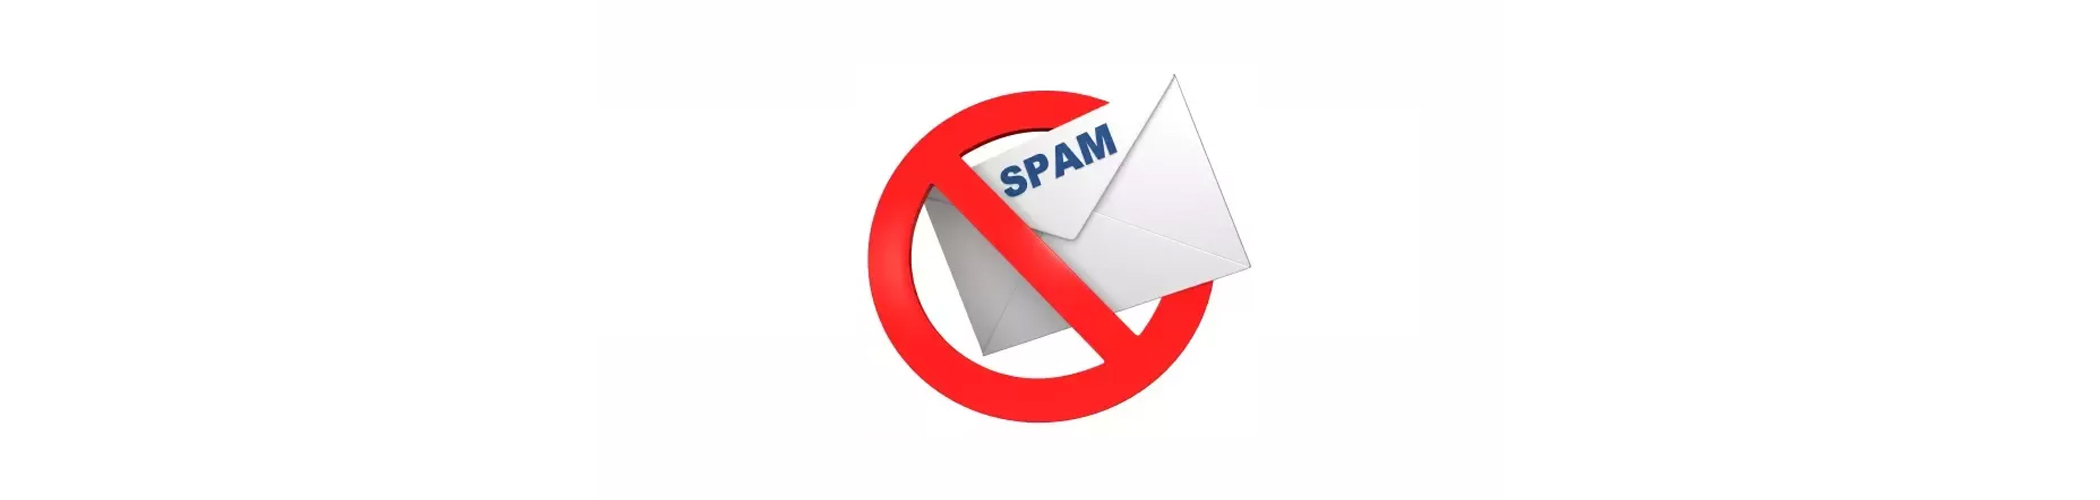 Hostarex blog: Spam Mail nədir? Necə Blok etmək olar?